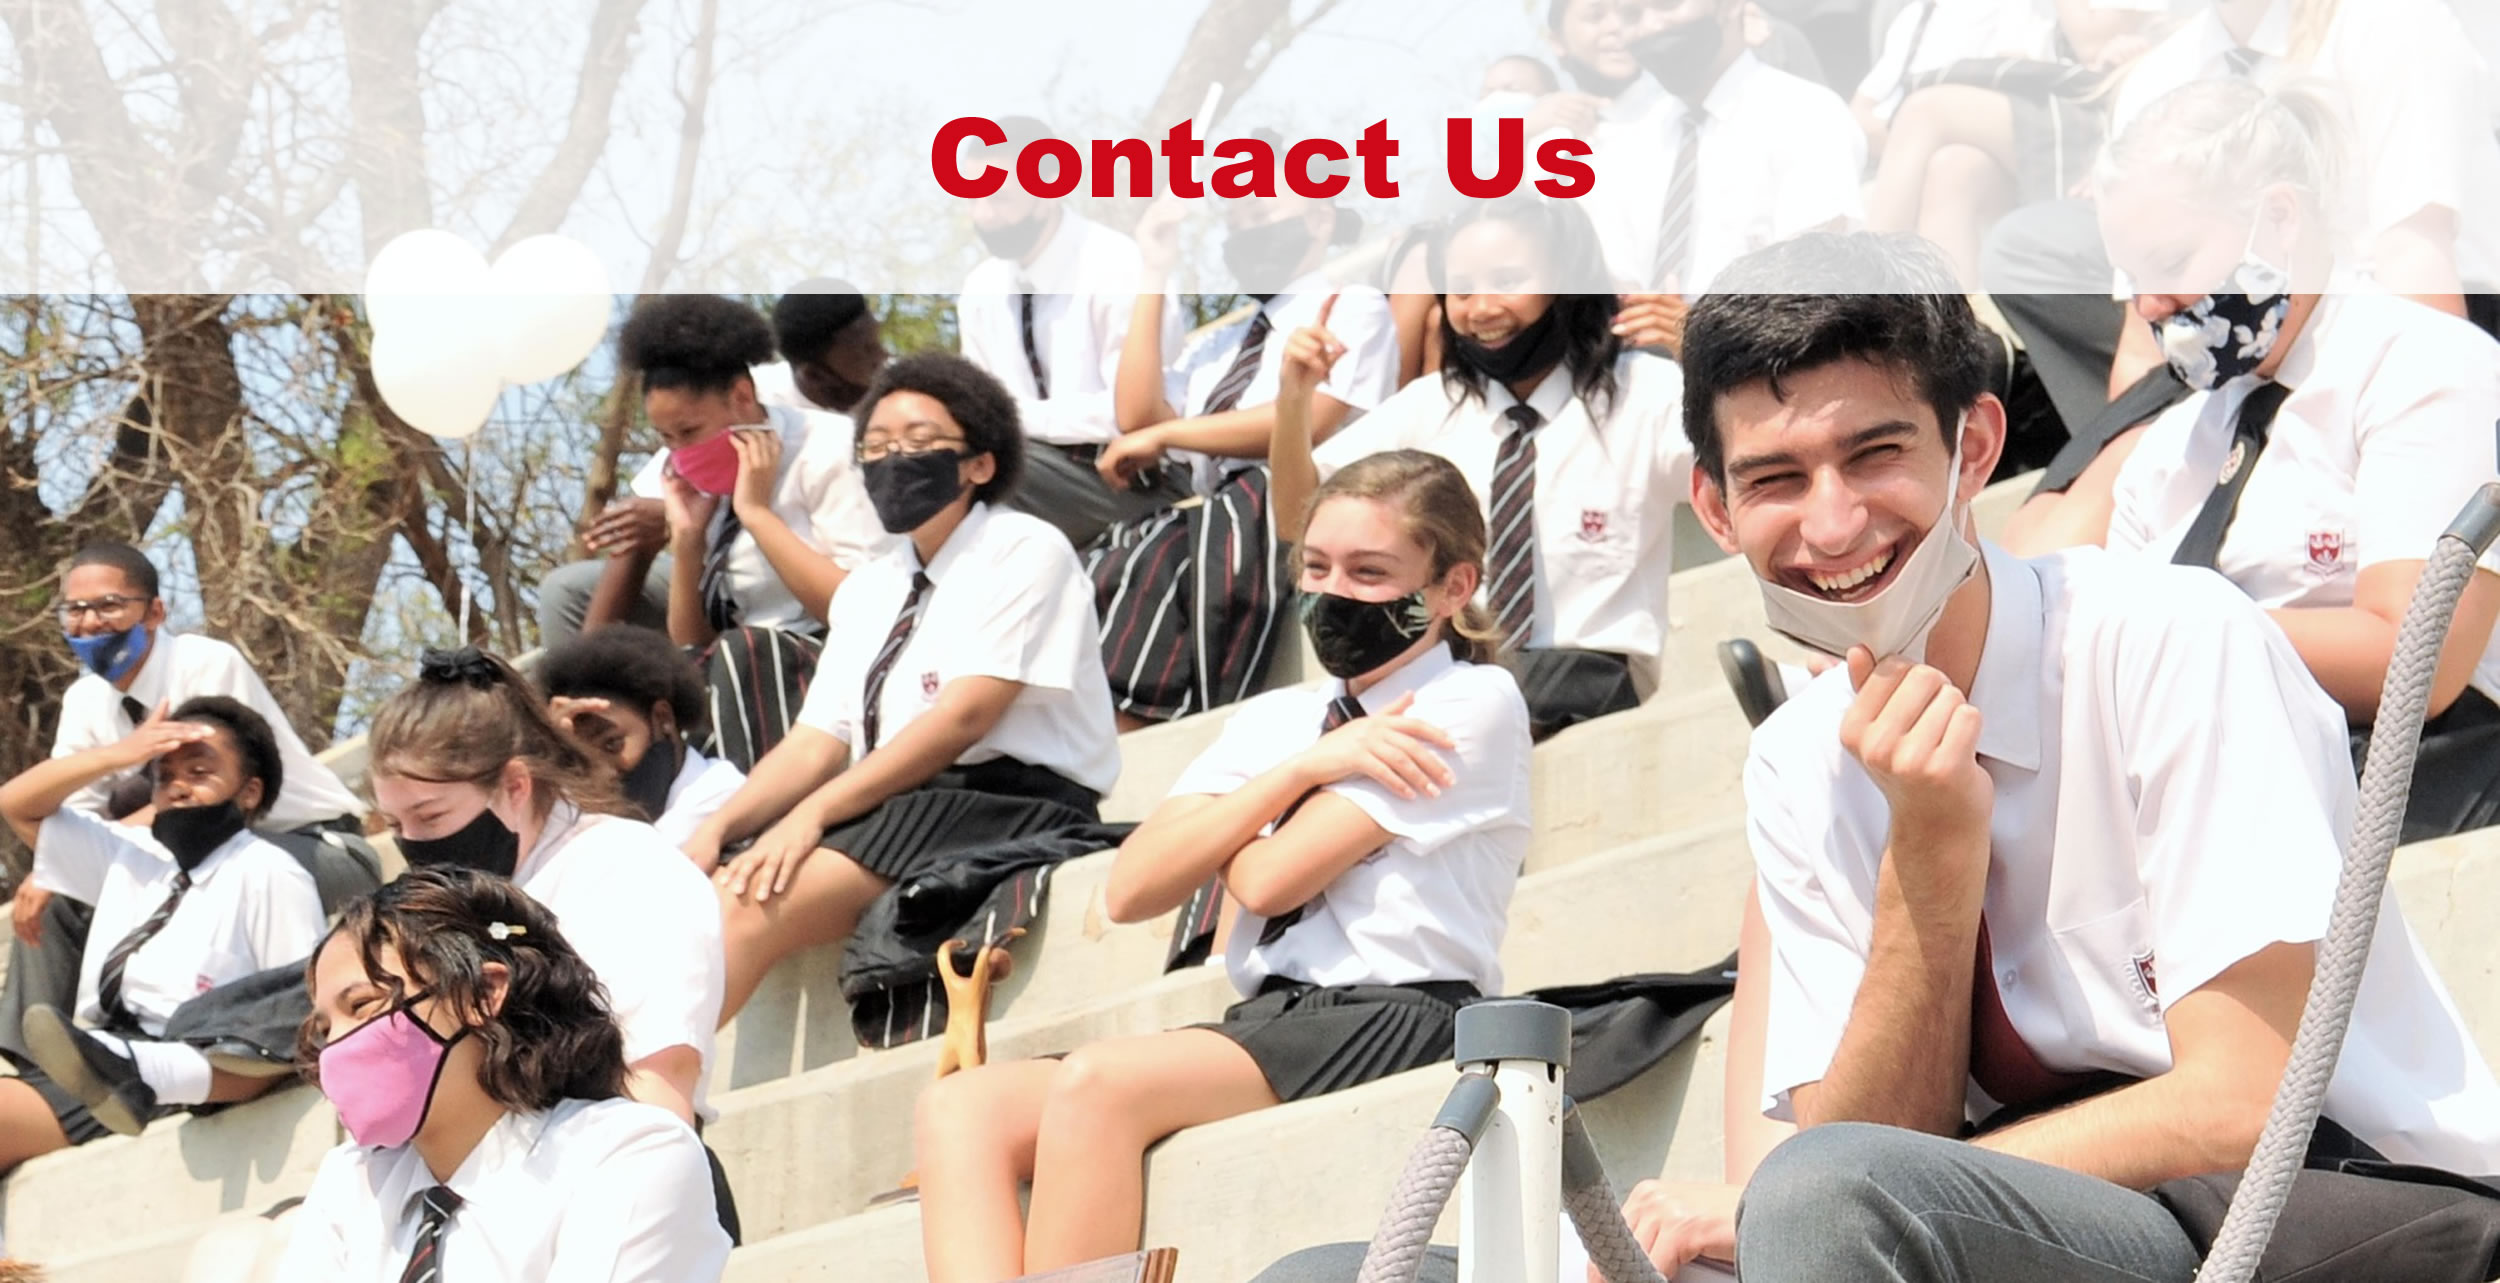 Contact Us - Oudtshoorn High School